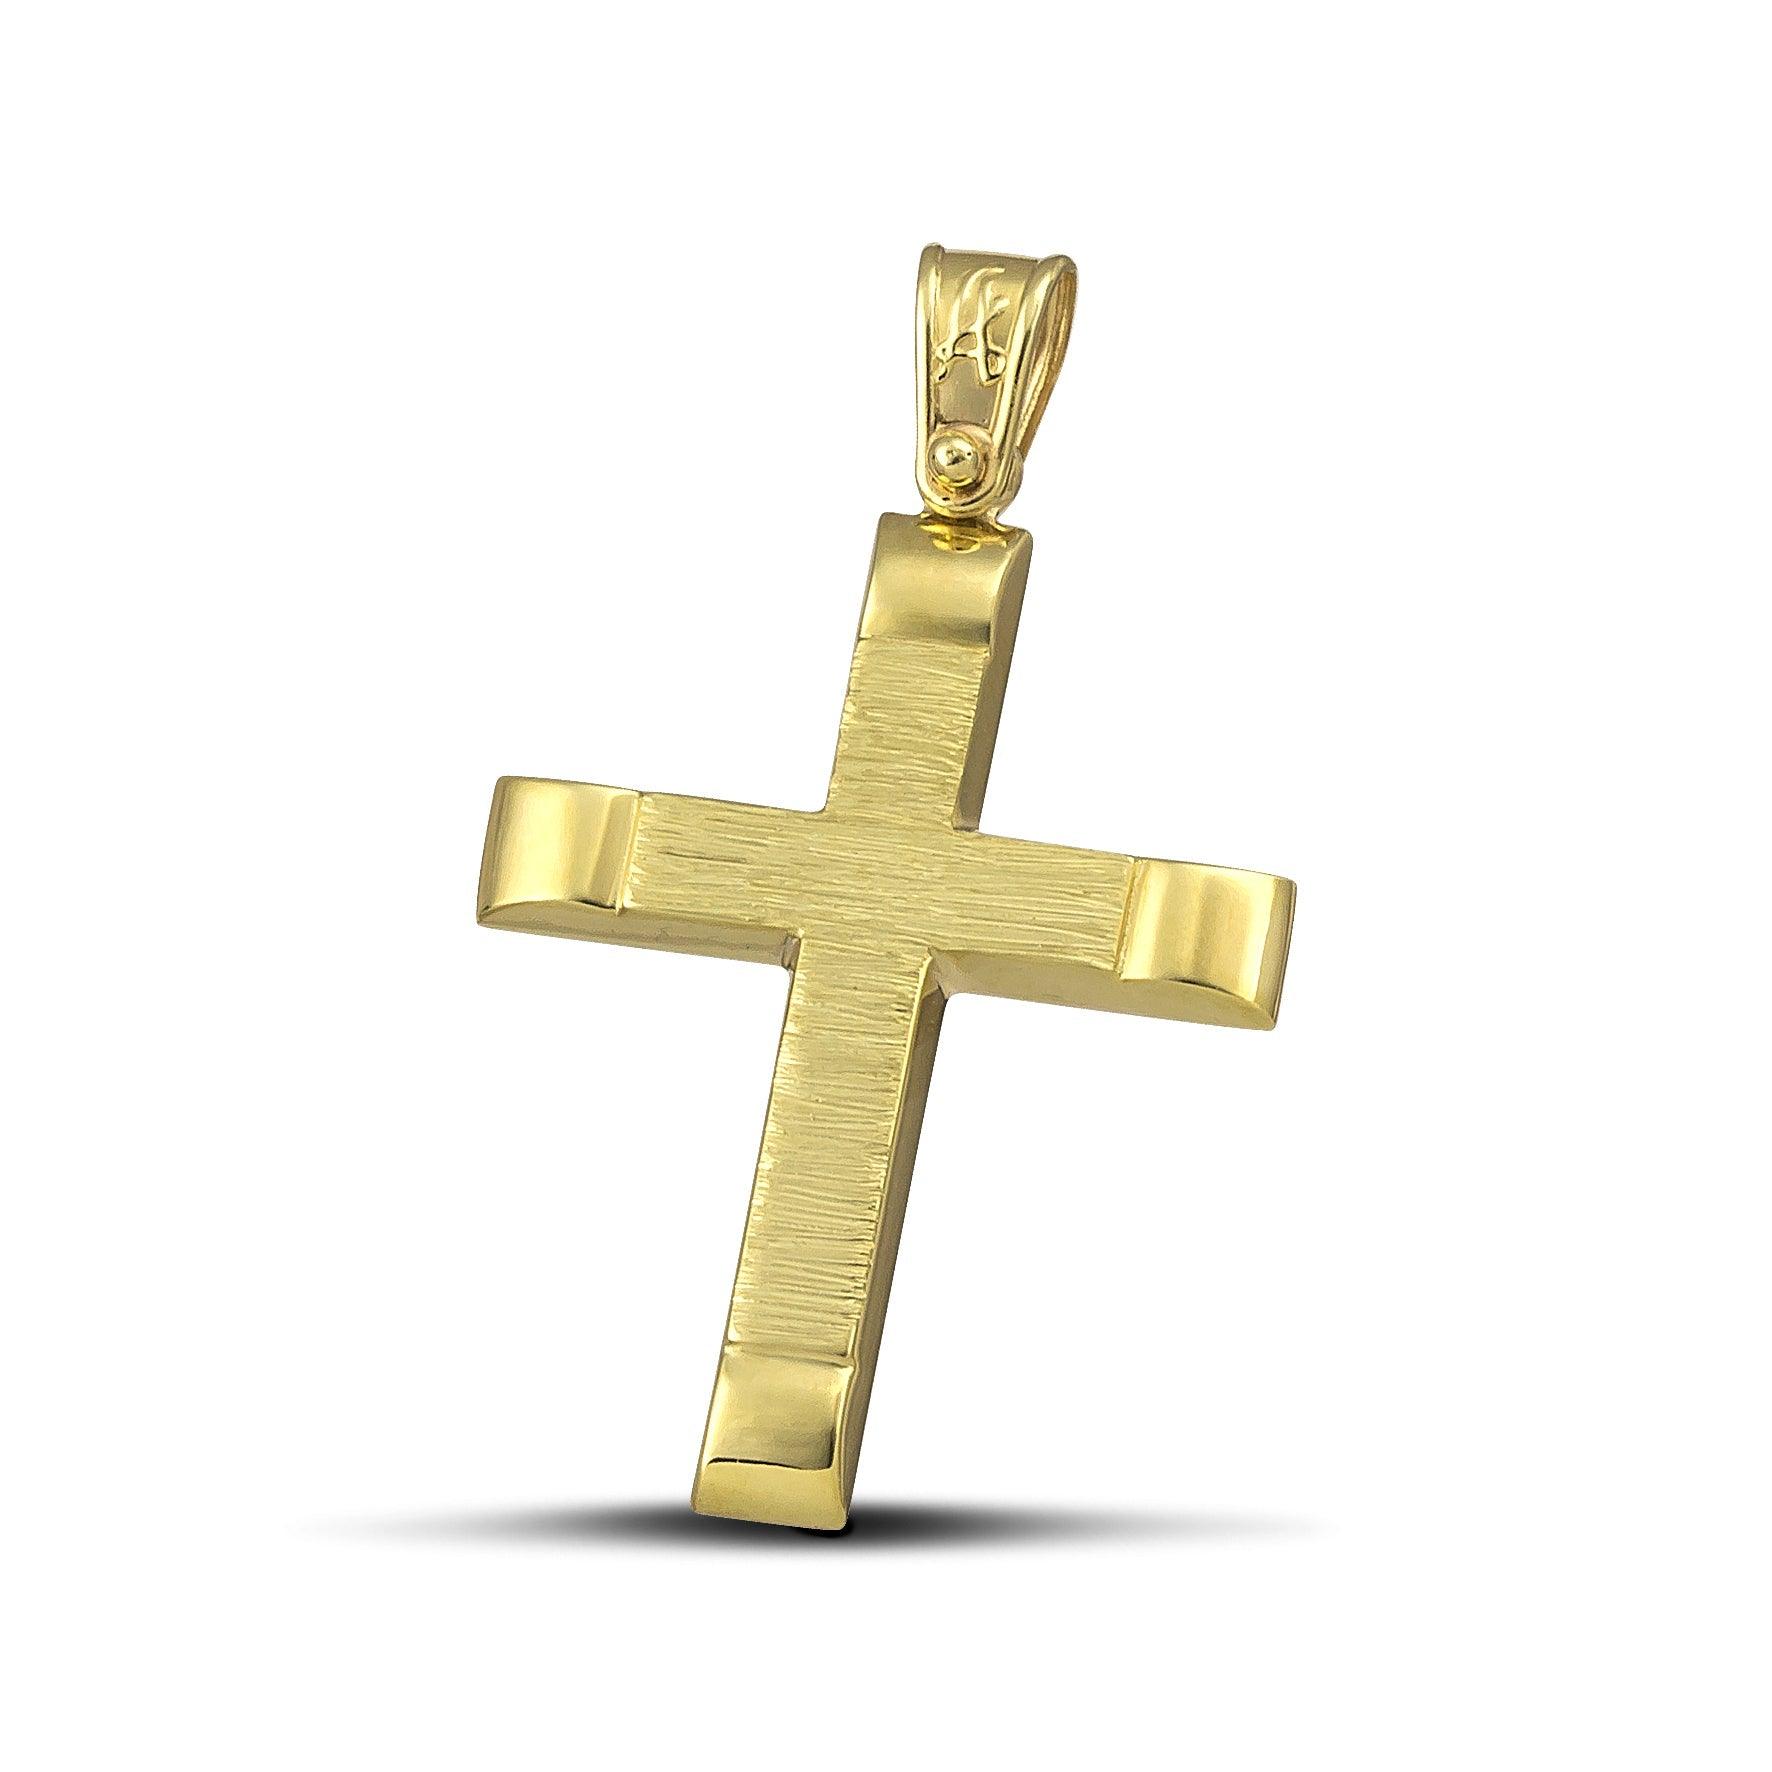 Αντρικός χρυσός βαφτιστικός σταυρός Κ14, σαγρέ με λουστράτες άκρες. 